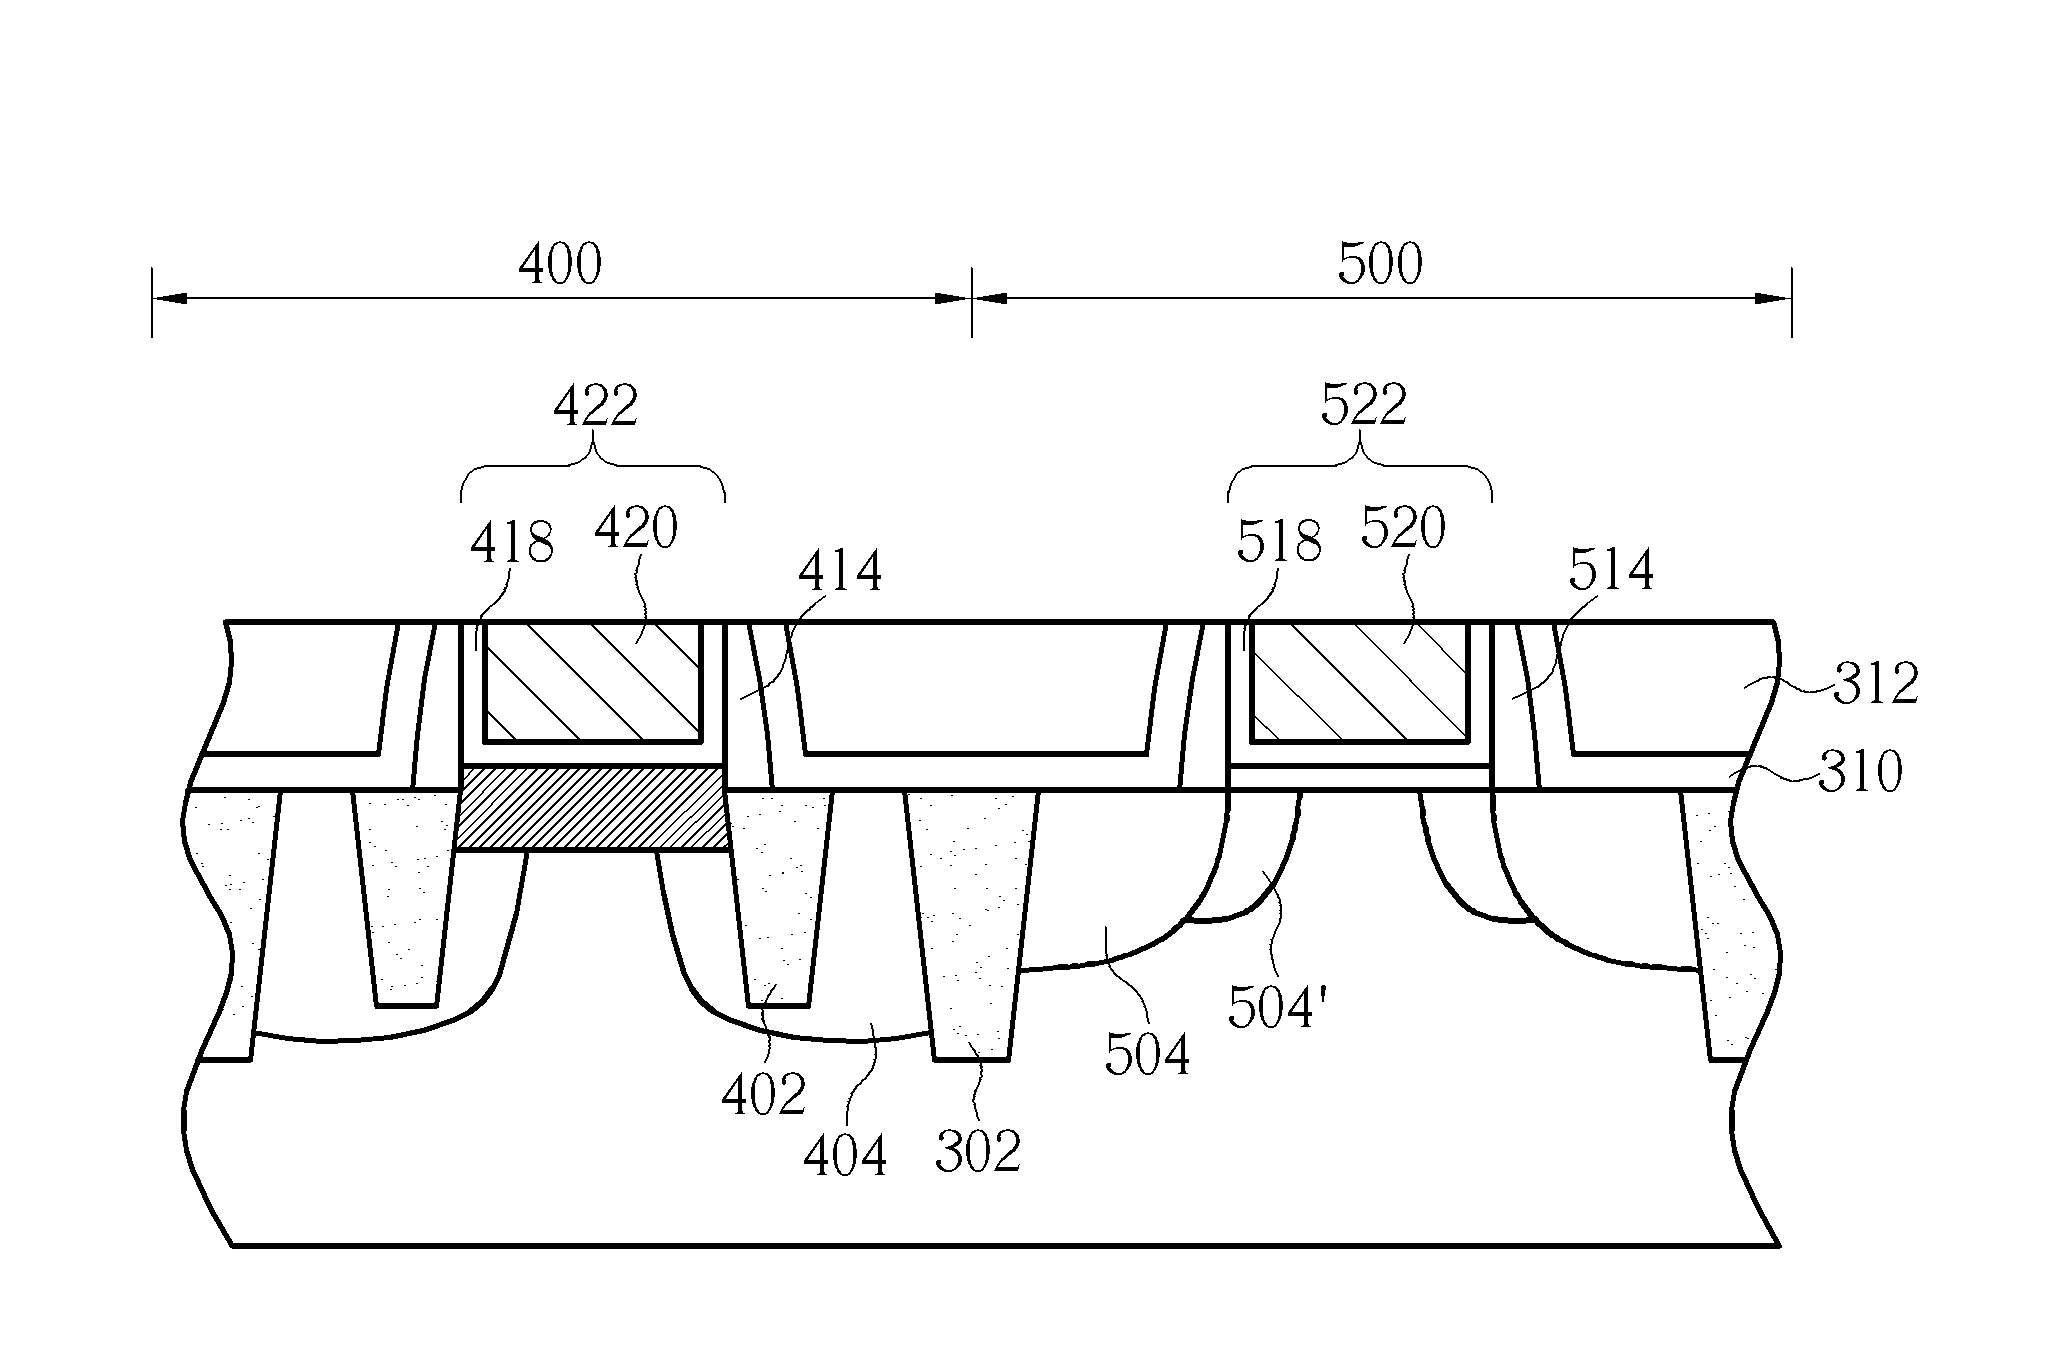 Method for forming high voltage transistor